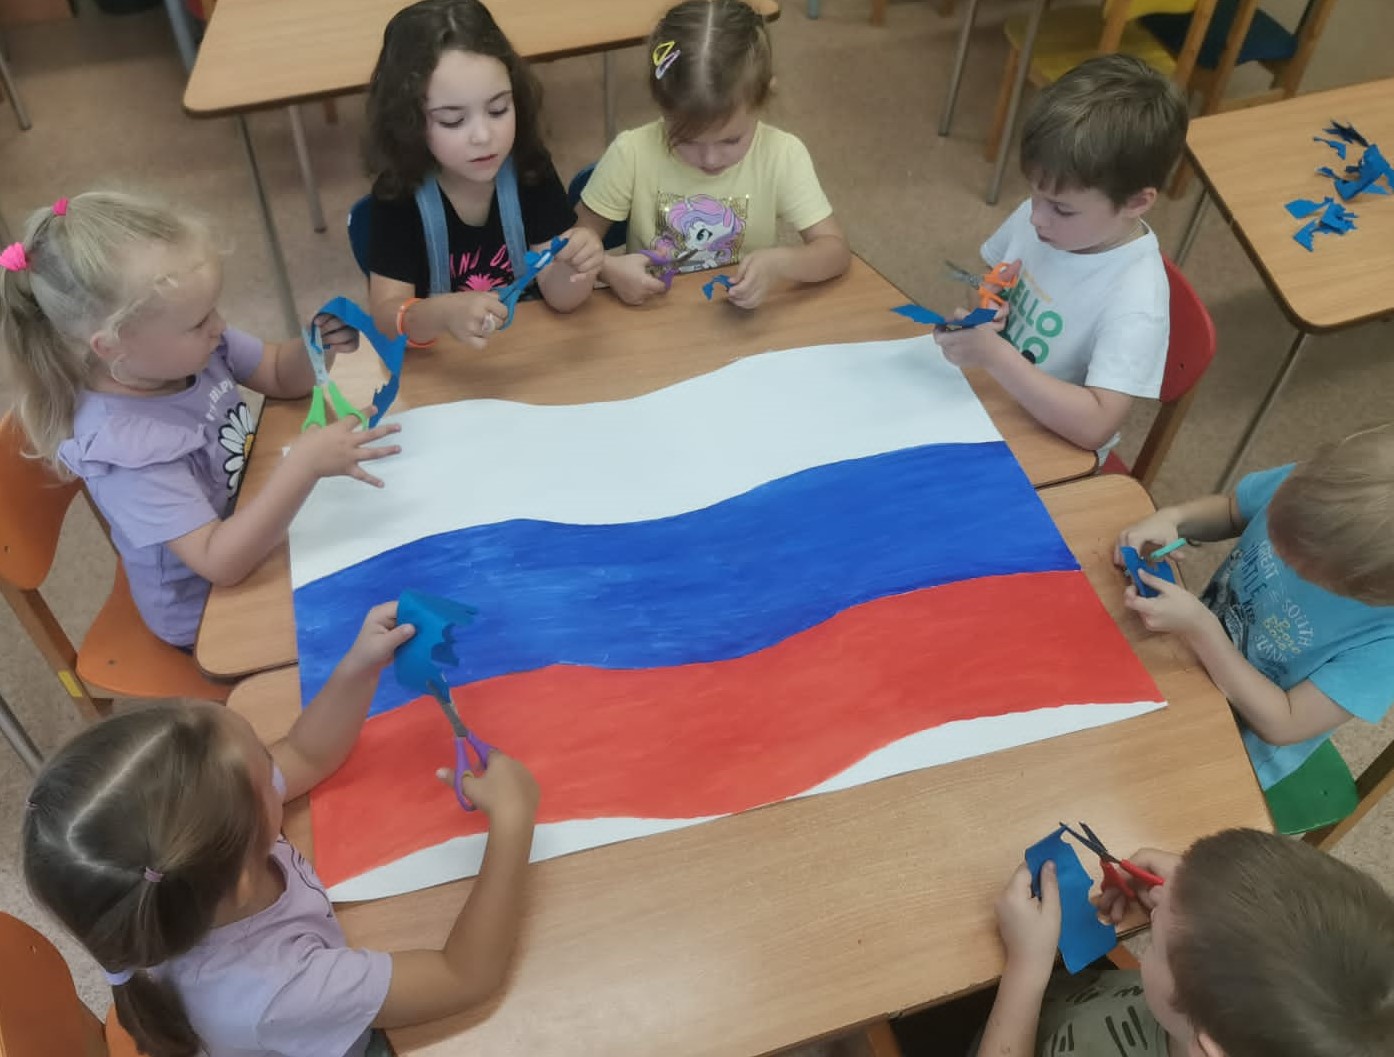 День Государственного флага Российской Федерации.